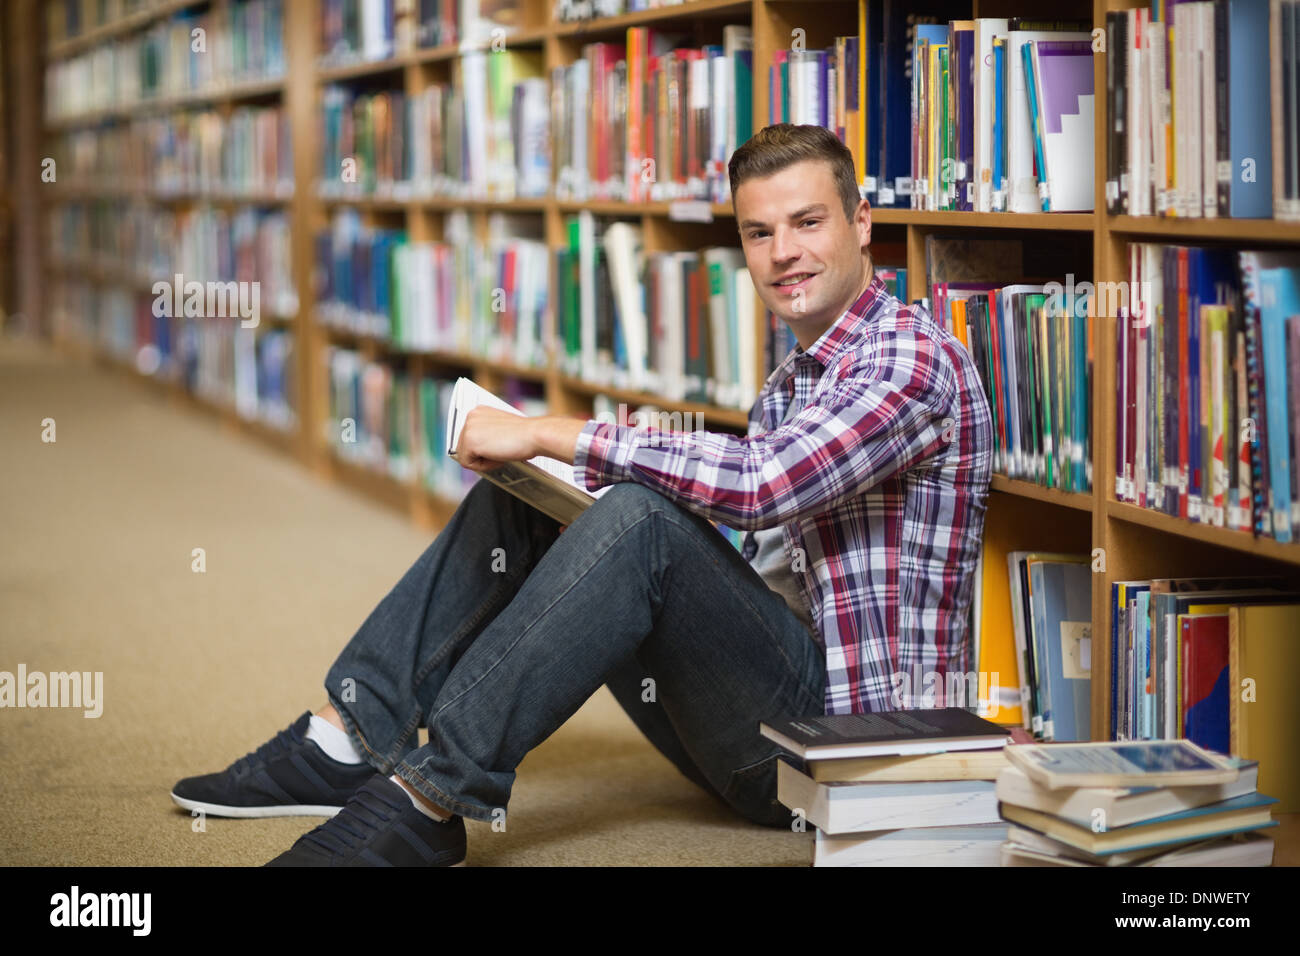 Читать про студентку. Студенты сидят на полу. Студентка читает книги в библиотеке на полу. Идущие студенты с книгами. Студент с книгами на полу.